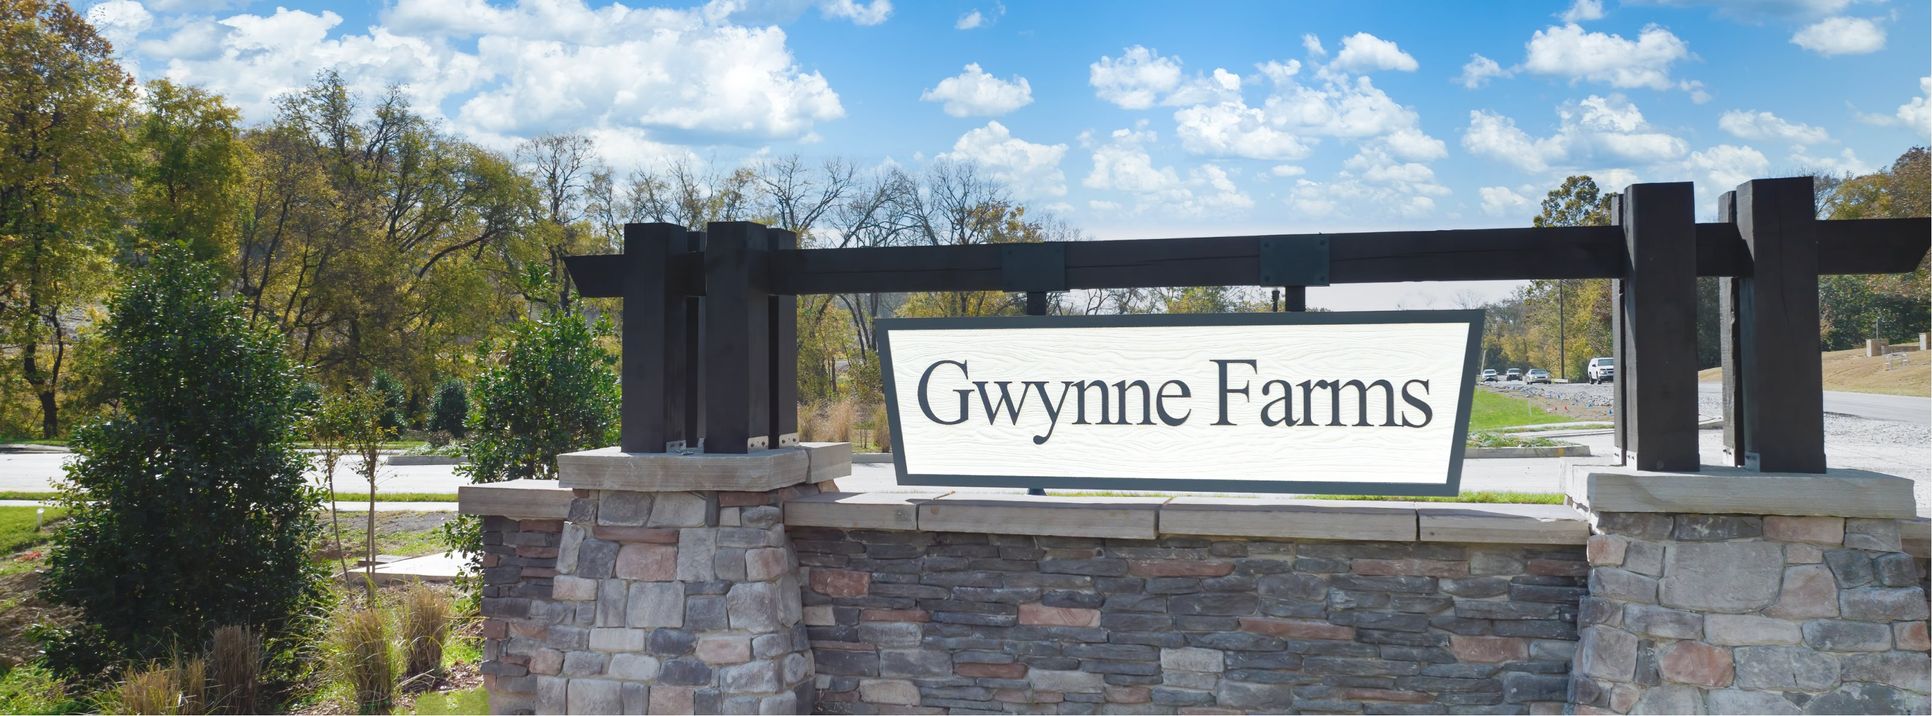 Gwynne Farms - Classic Collection,37167